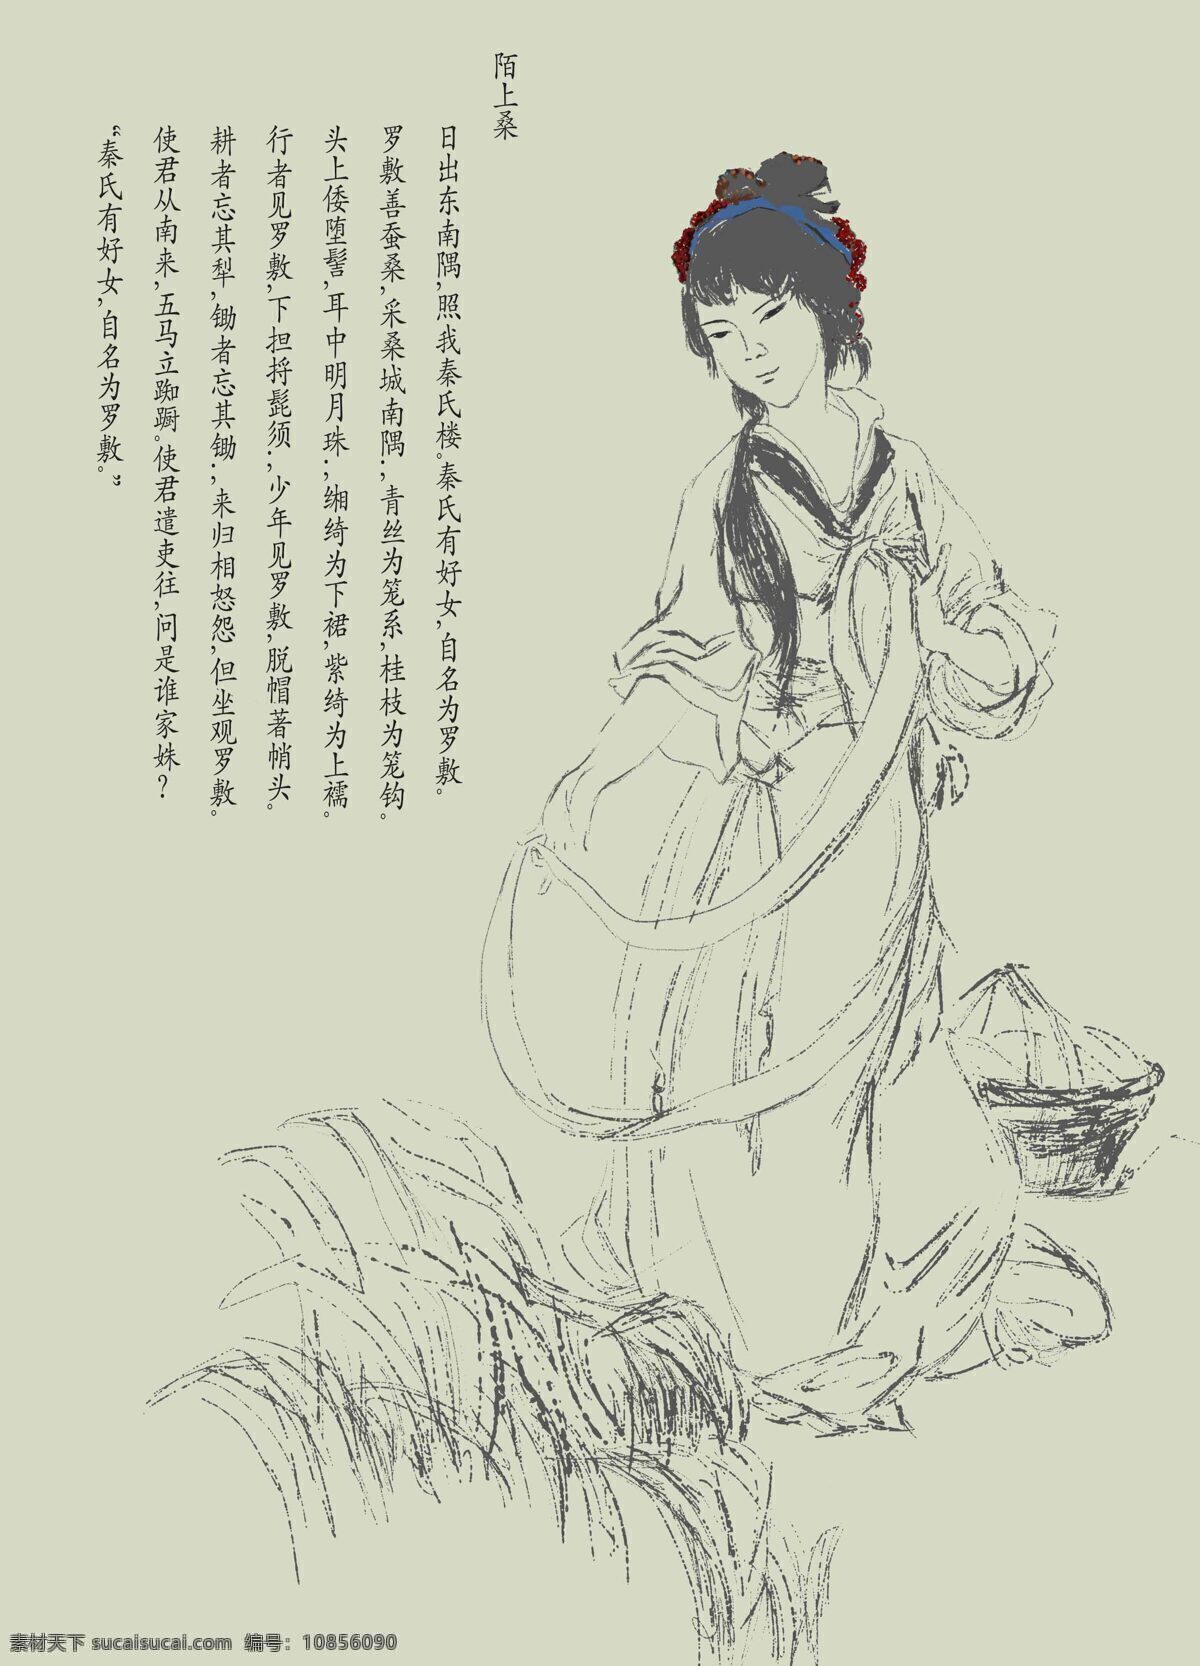 传统人物手绘 手绘传统人物 秦罗敷 陌上桑 传统文化 绘画书法 文化艺术